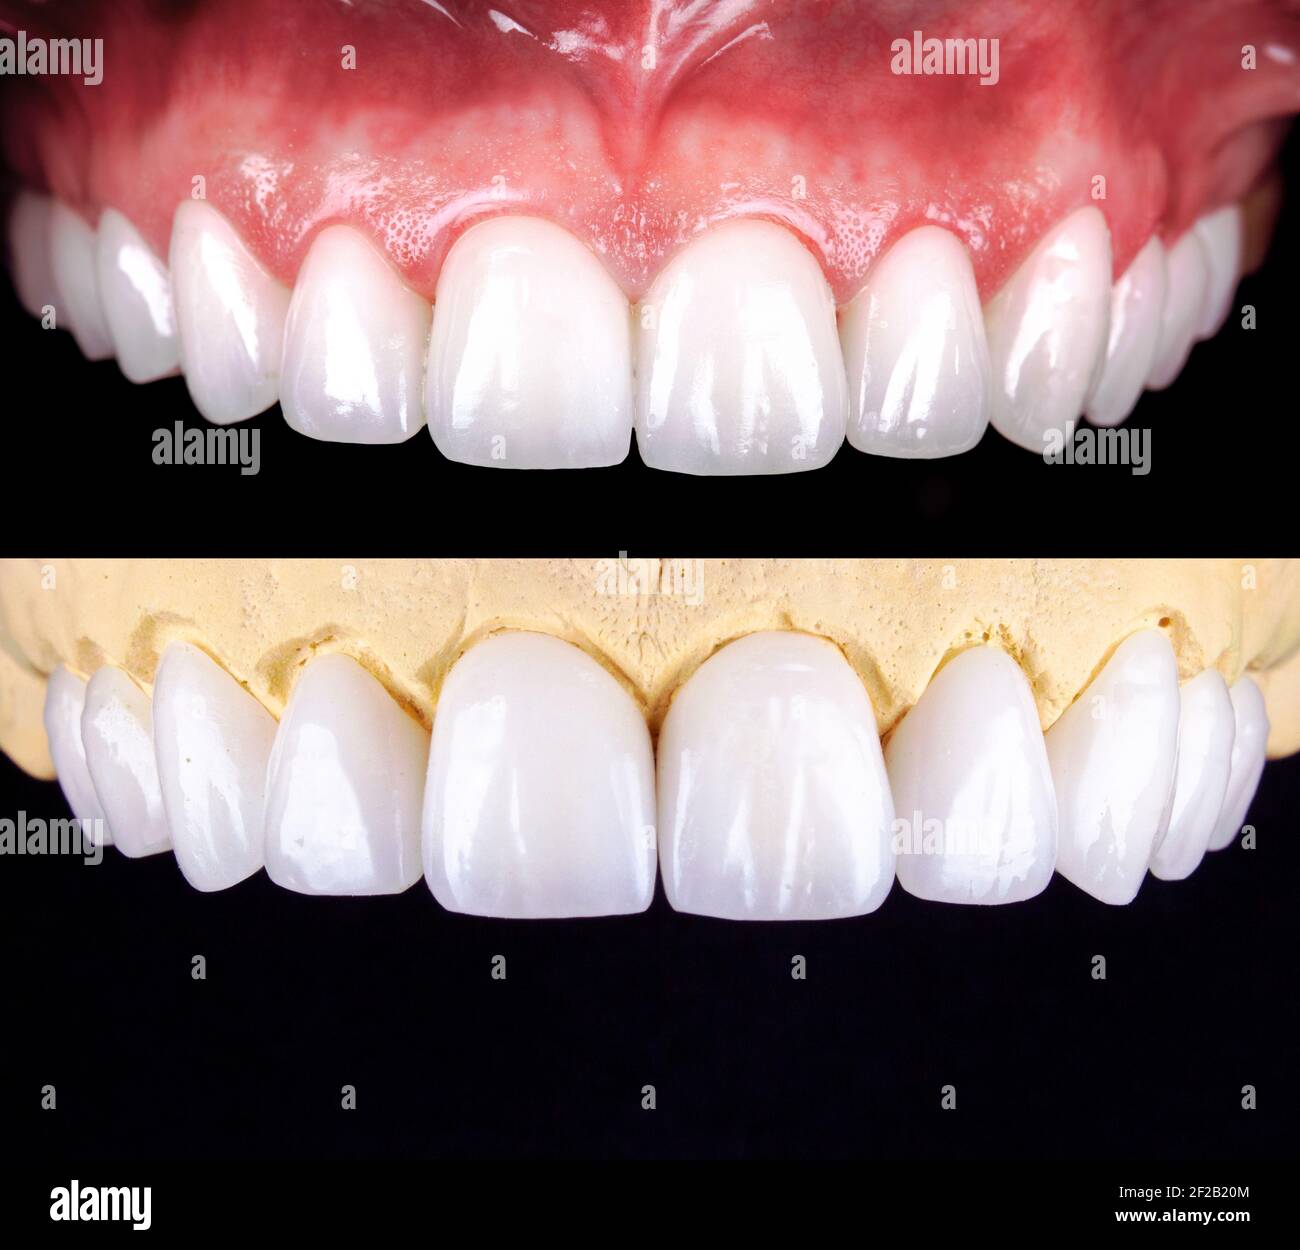 Perfektes Lächeln vor und nach Veneers Bleichmittel von Zirkon Bogen Keramik Prothesen Implantate Kronen. Zahnwiederherstellung Behandlung Klinik Patient. Ergebnis von Stockfoto